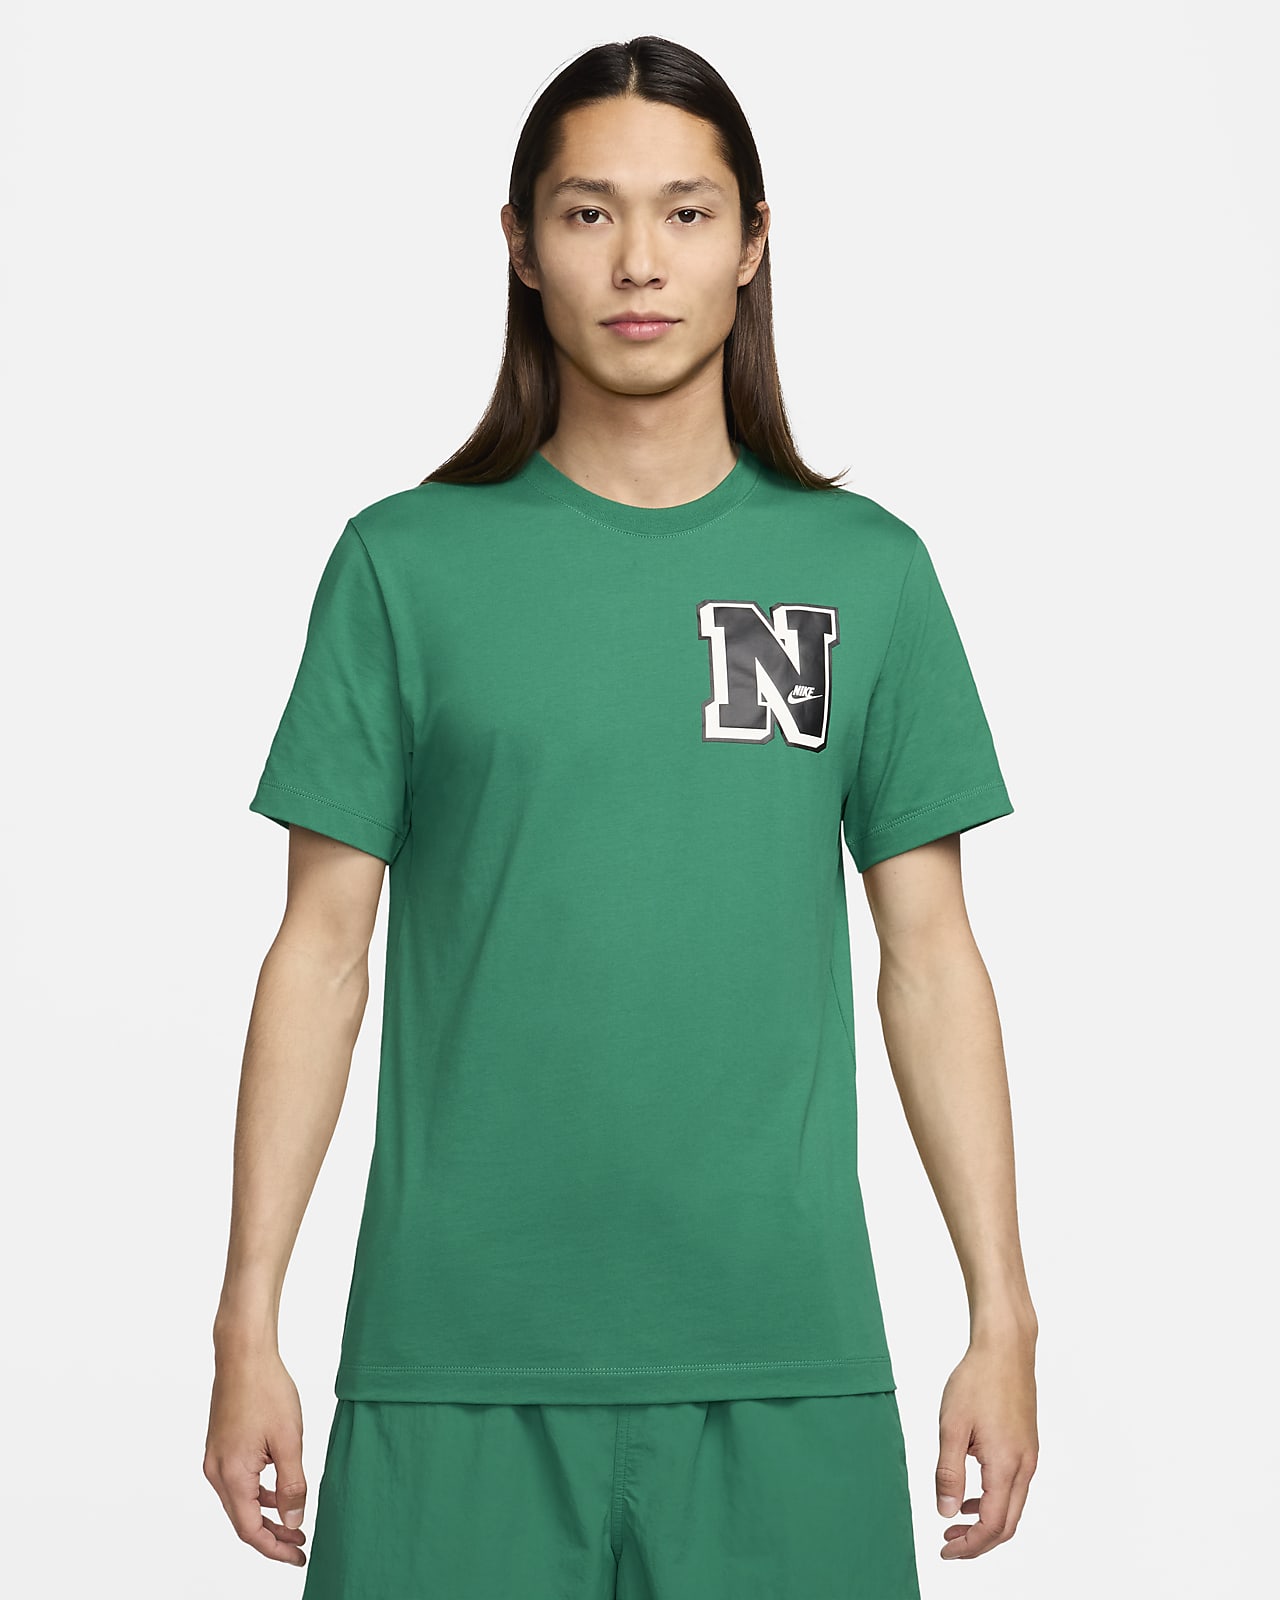 나이키 스포츠웨어 남성 티셔츠